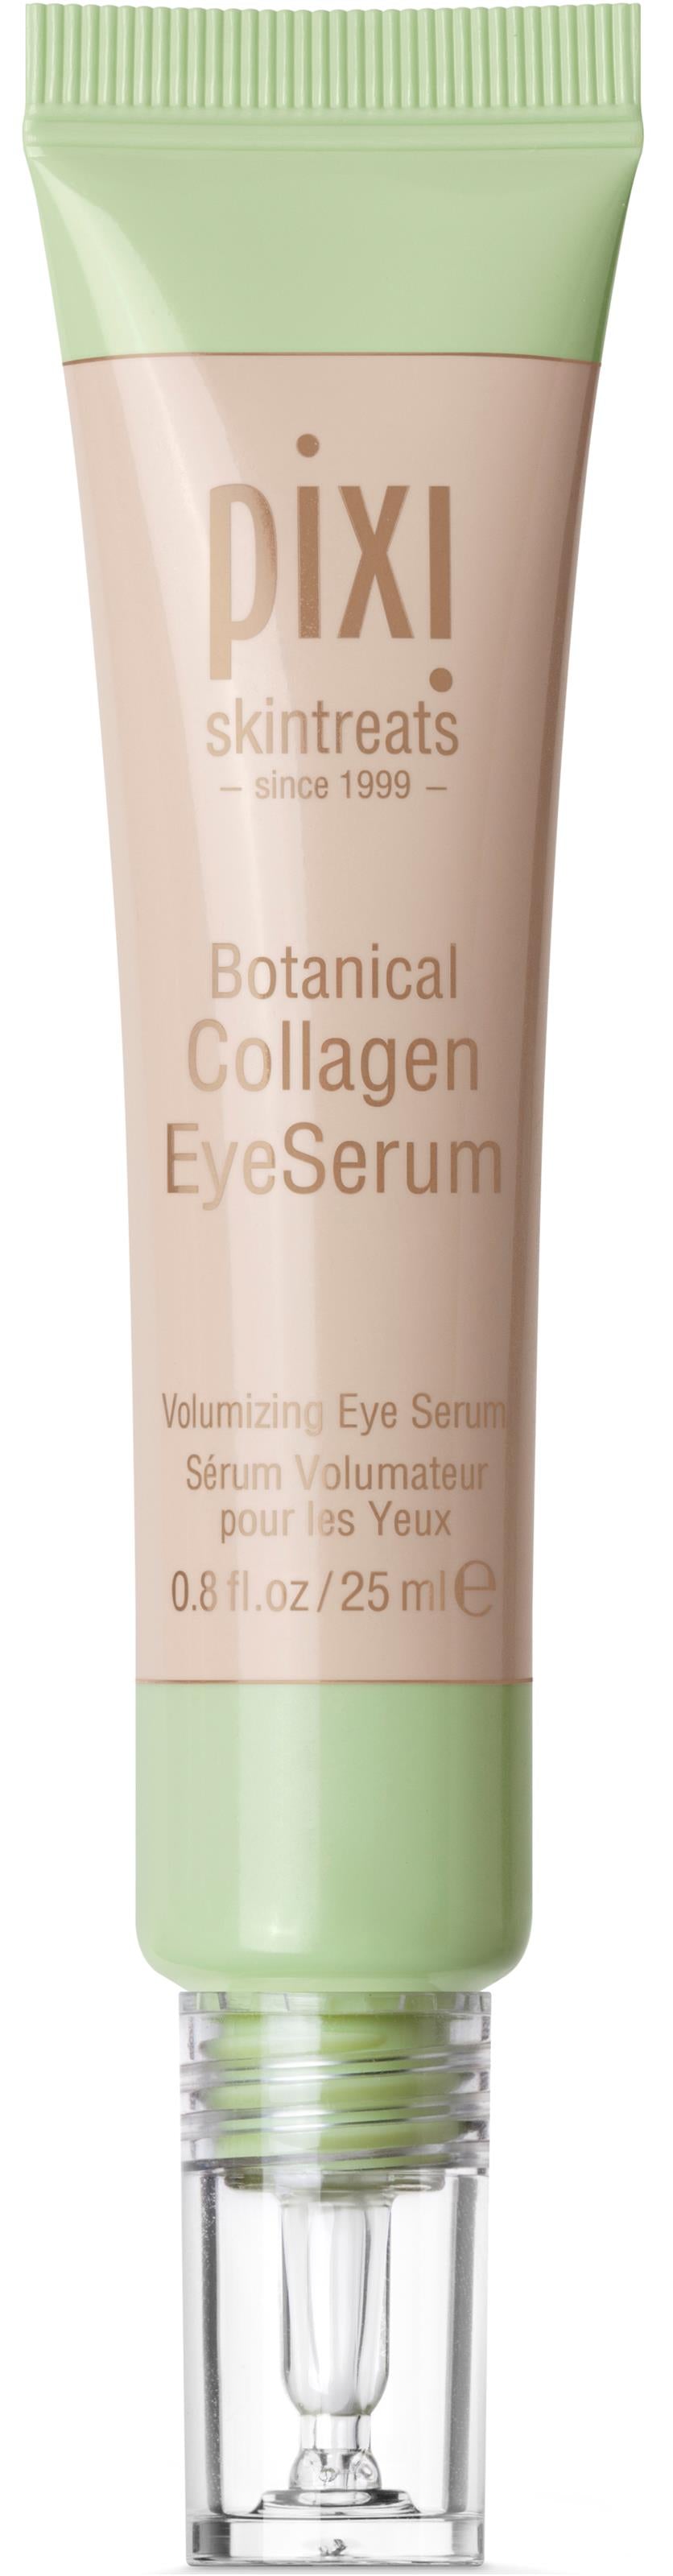 Buy Pixi Botanical Collagen Eye Serum - 25ml in Pakistan